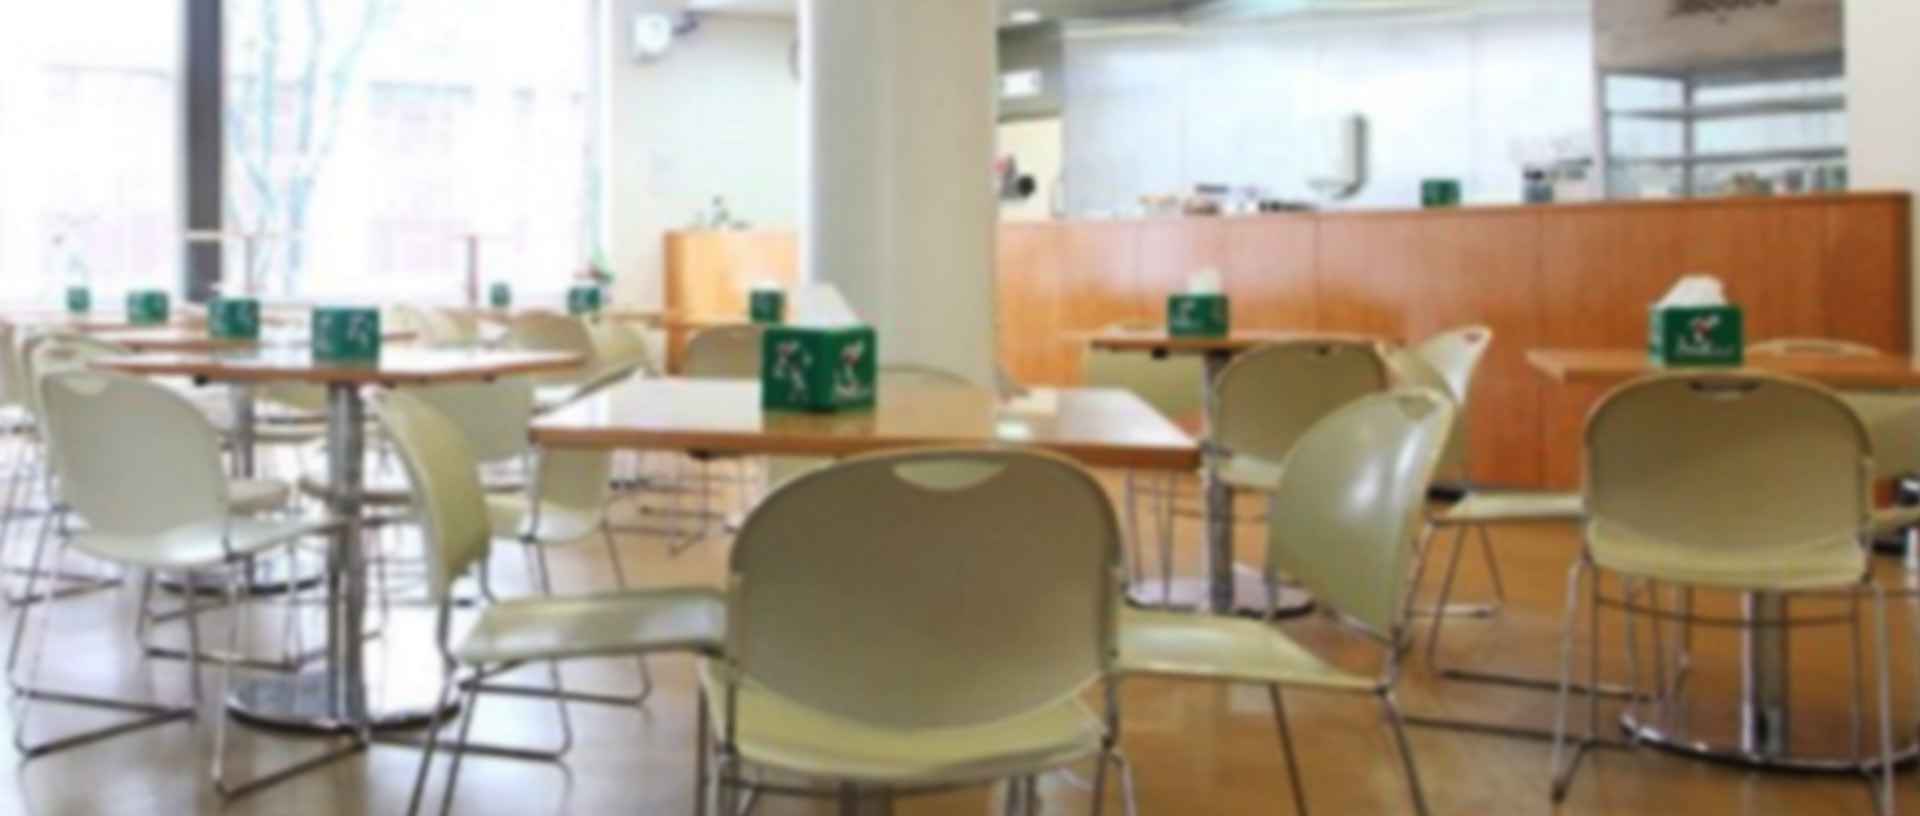 Espaço de refeição para estudantes e colaboradores da Faculdade de Ciências